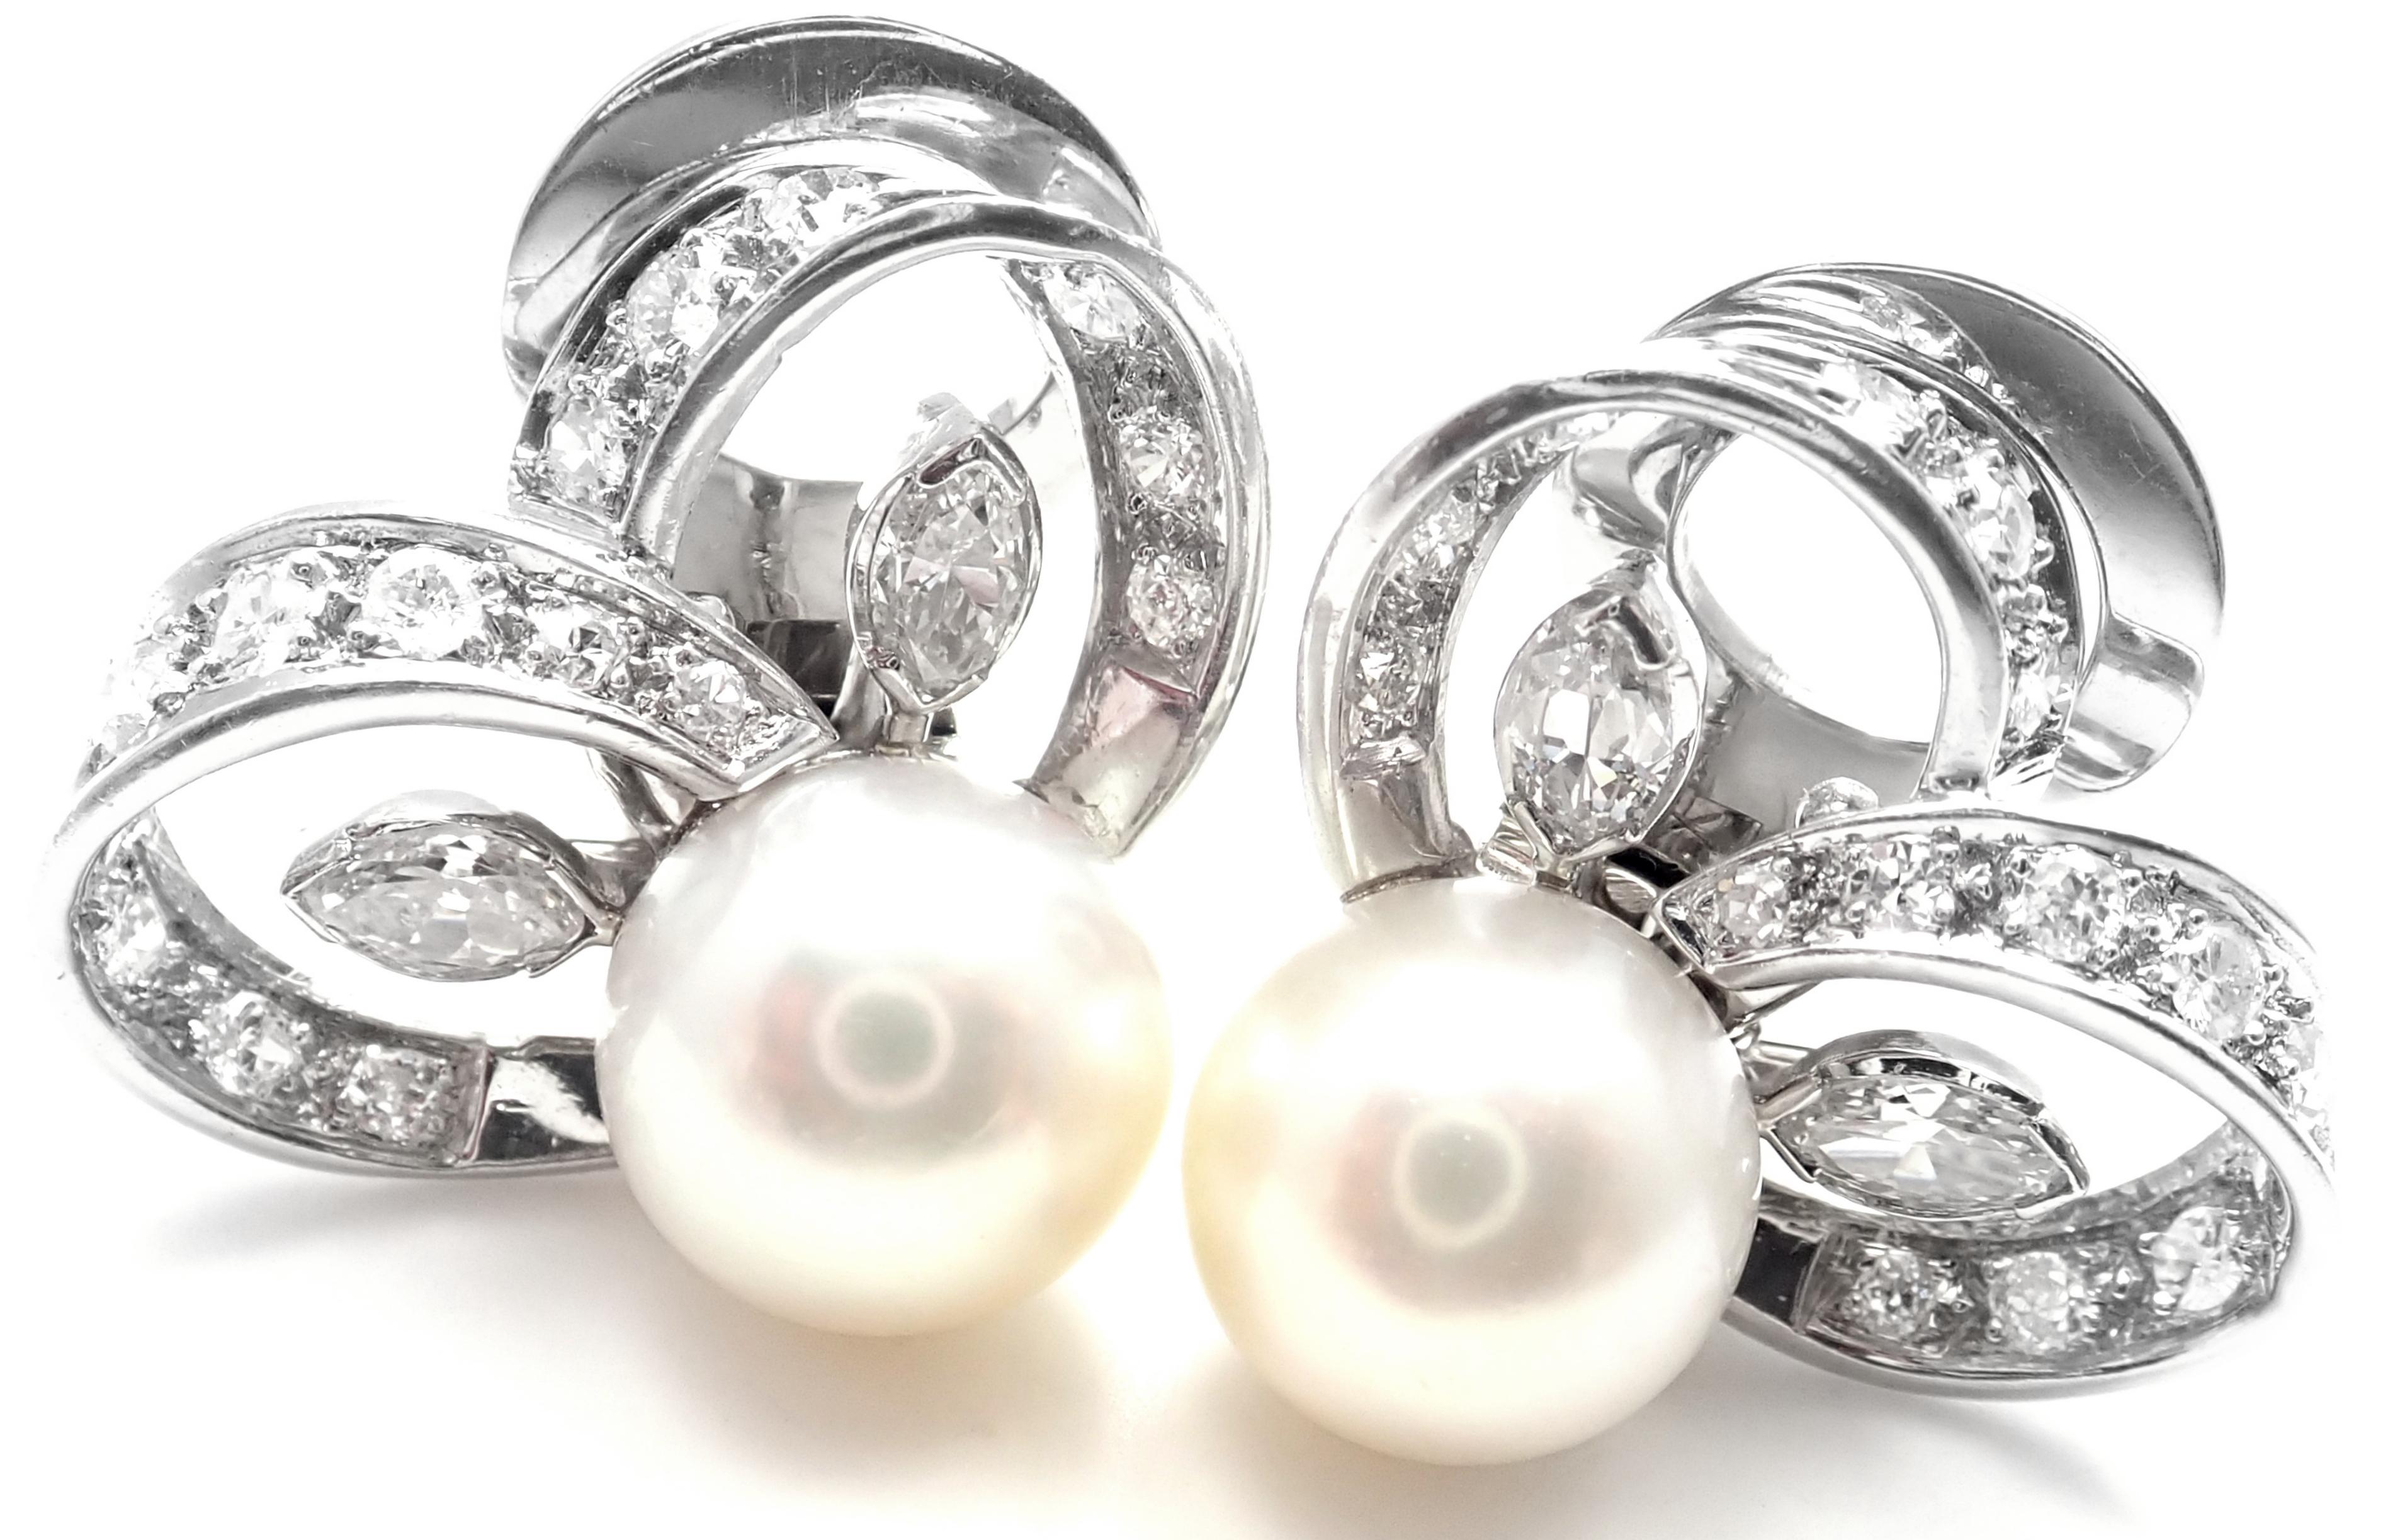 Boucles d'oreilles vintage en platine, diamant et perle par Marianne Ostier. 
Avec 28 diamants ronds de taille brillante de pureté VS1 et de couleur G 
4 diamants de forme marque VS1 clarté, couleur G
Poids total des diamants : environ 1,20 ct
2